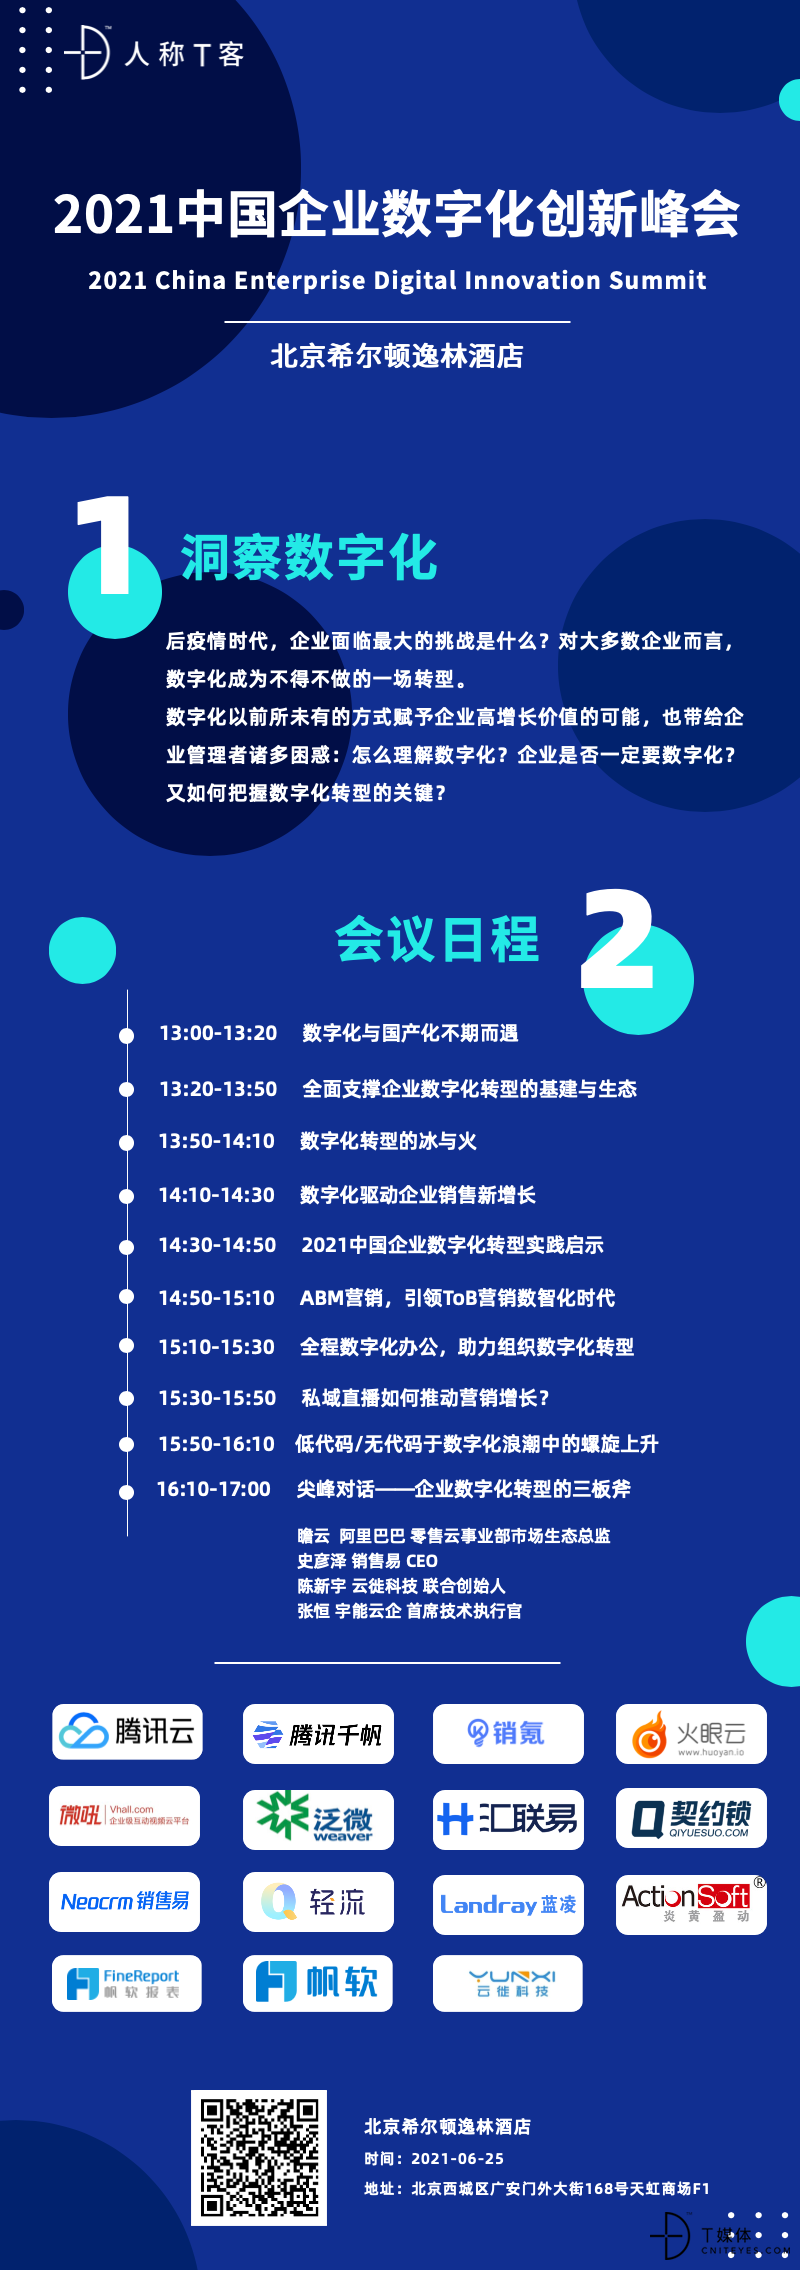 2021中国企业数字化创新峰会.png